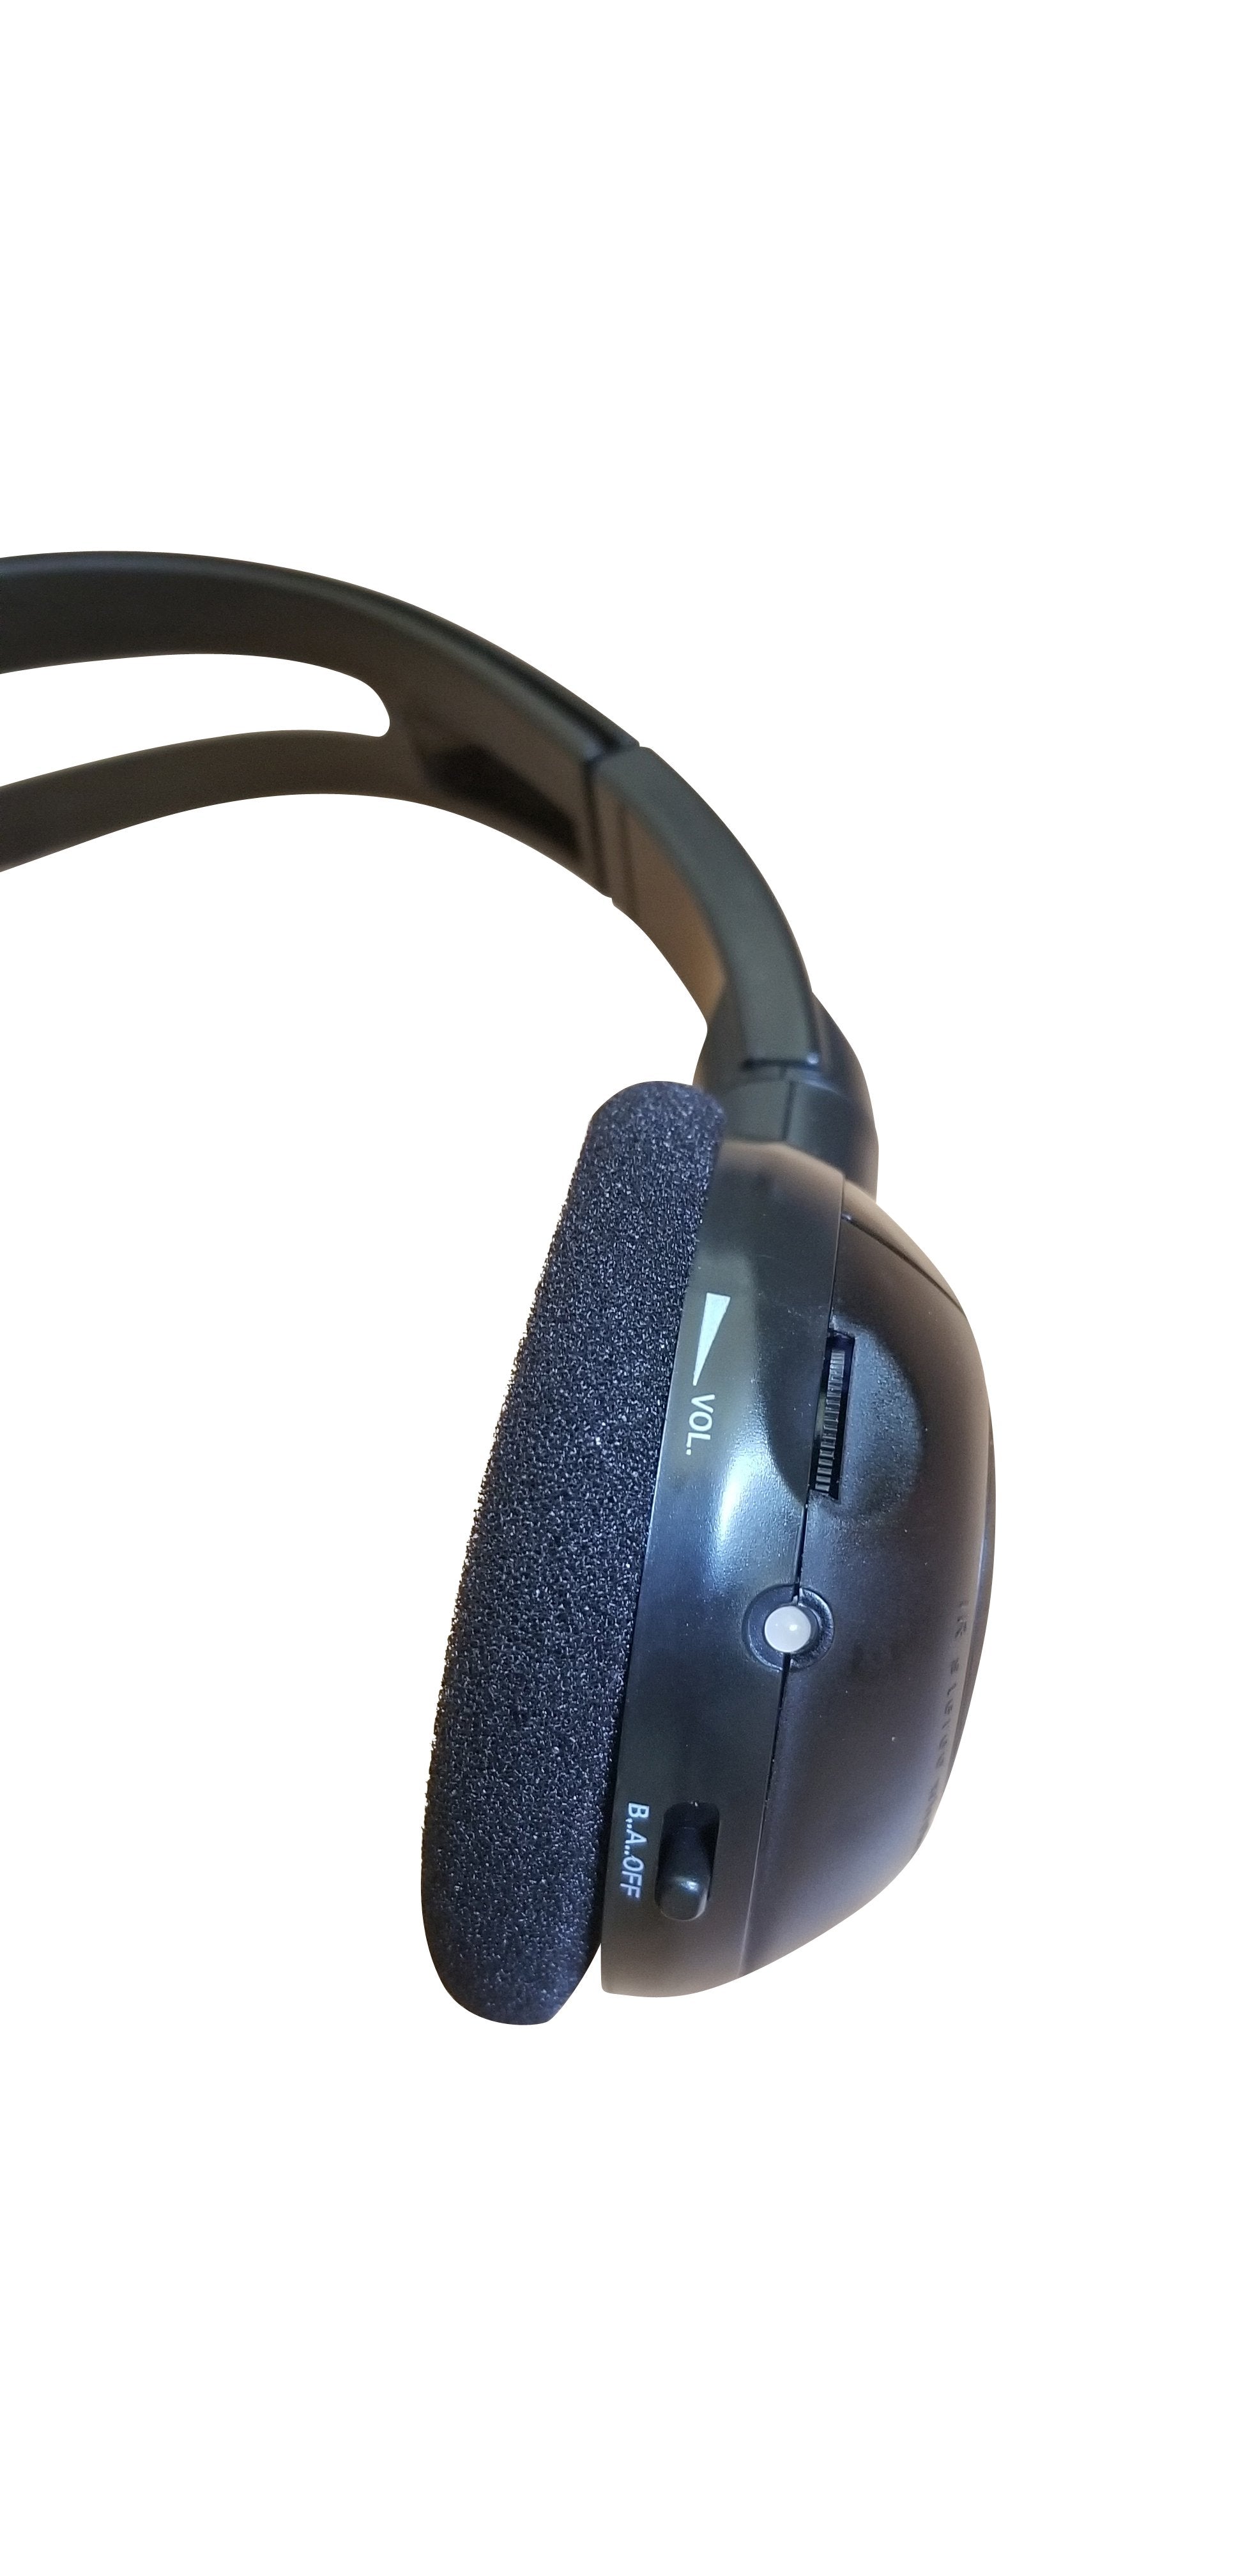 2014 GMC Yukon Wireless DVD Headphone